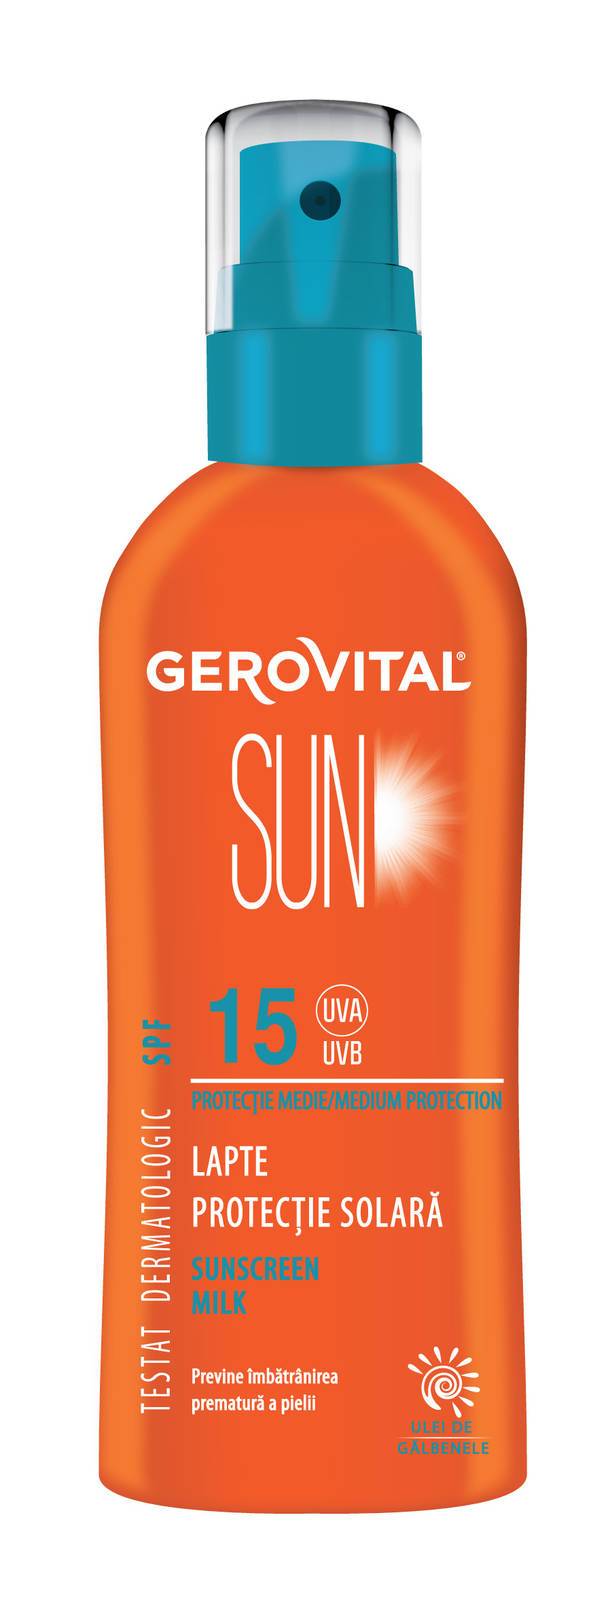 Lapte protectie solara spf 15 150ml - gerovital sun